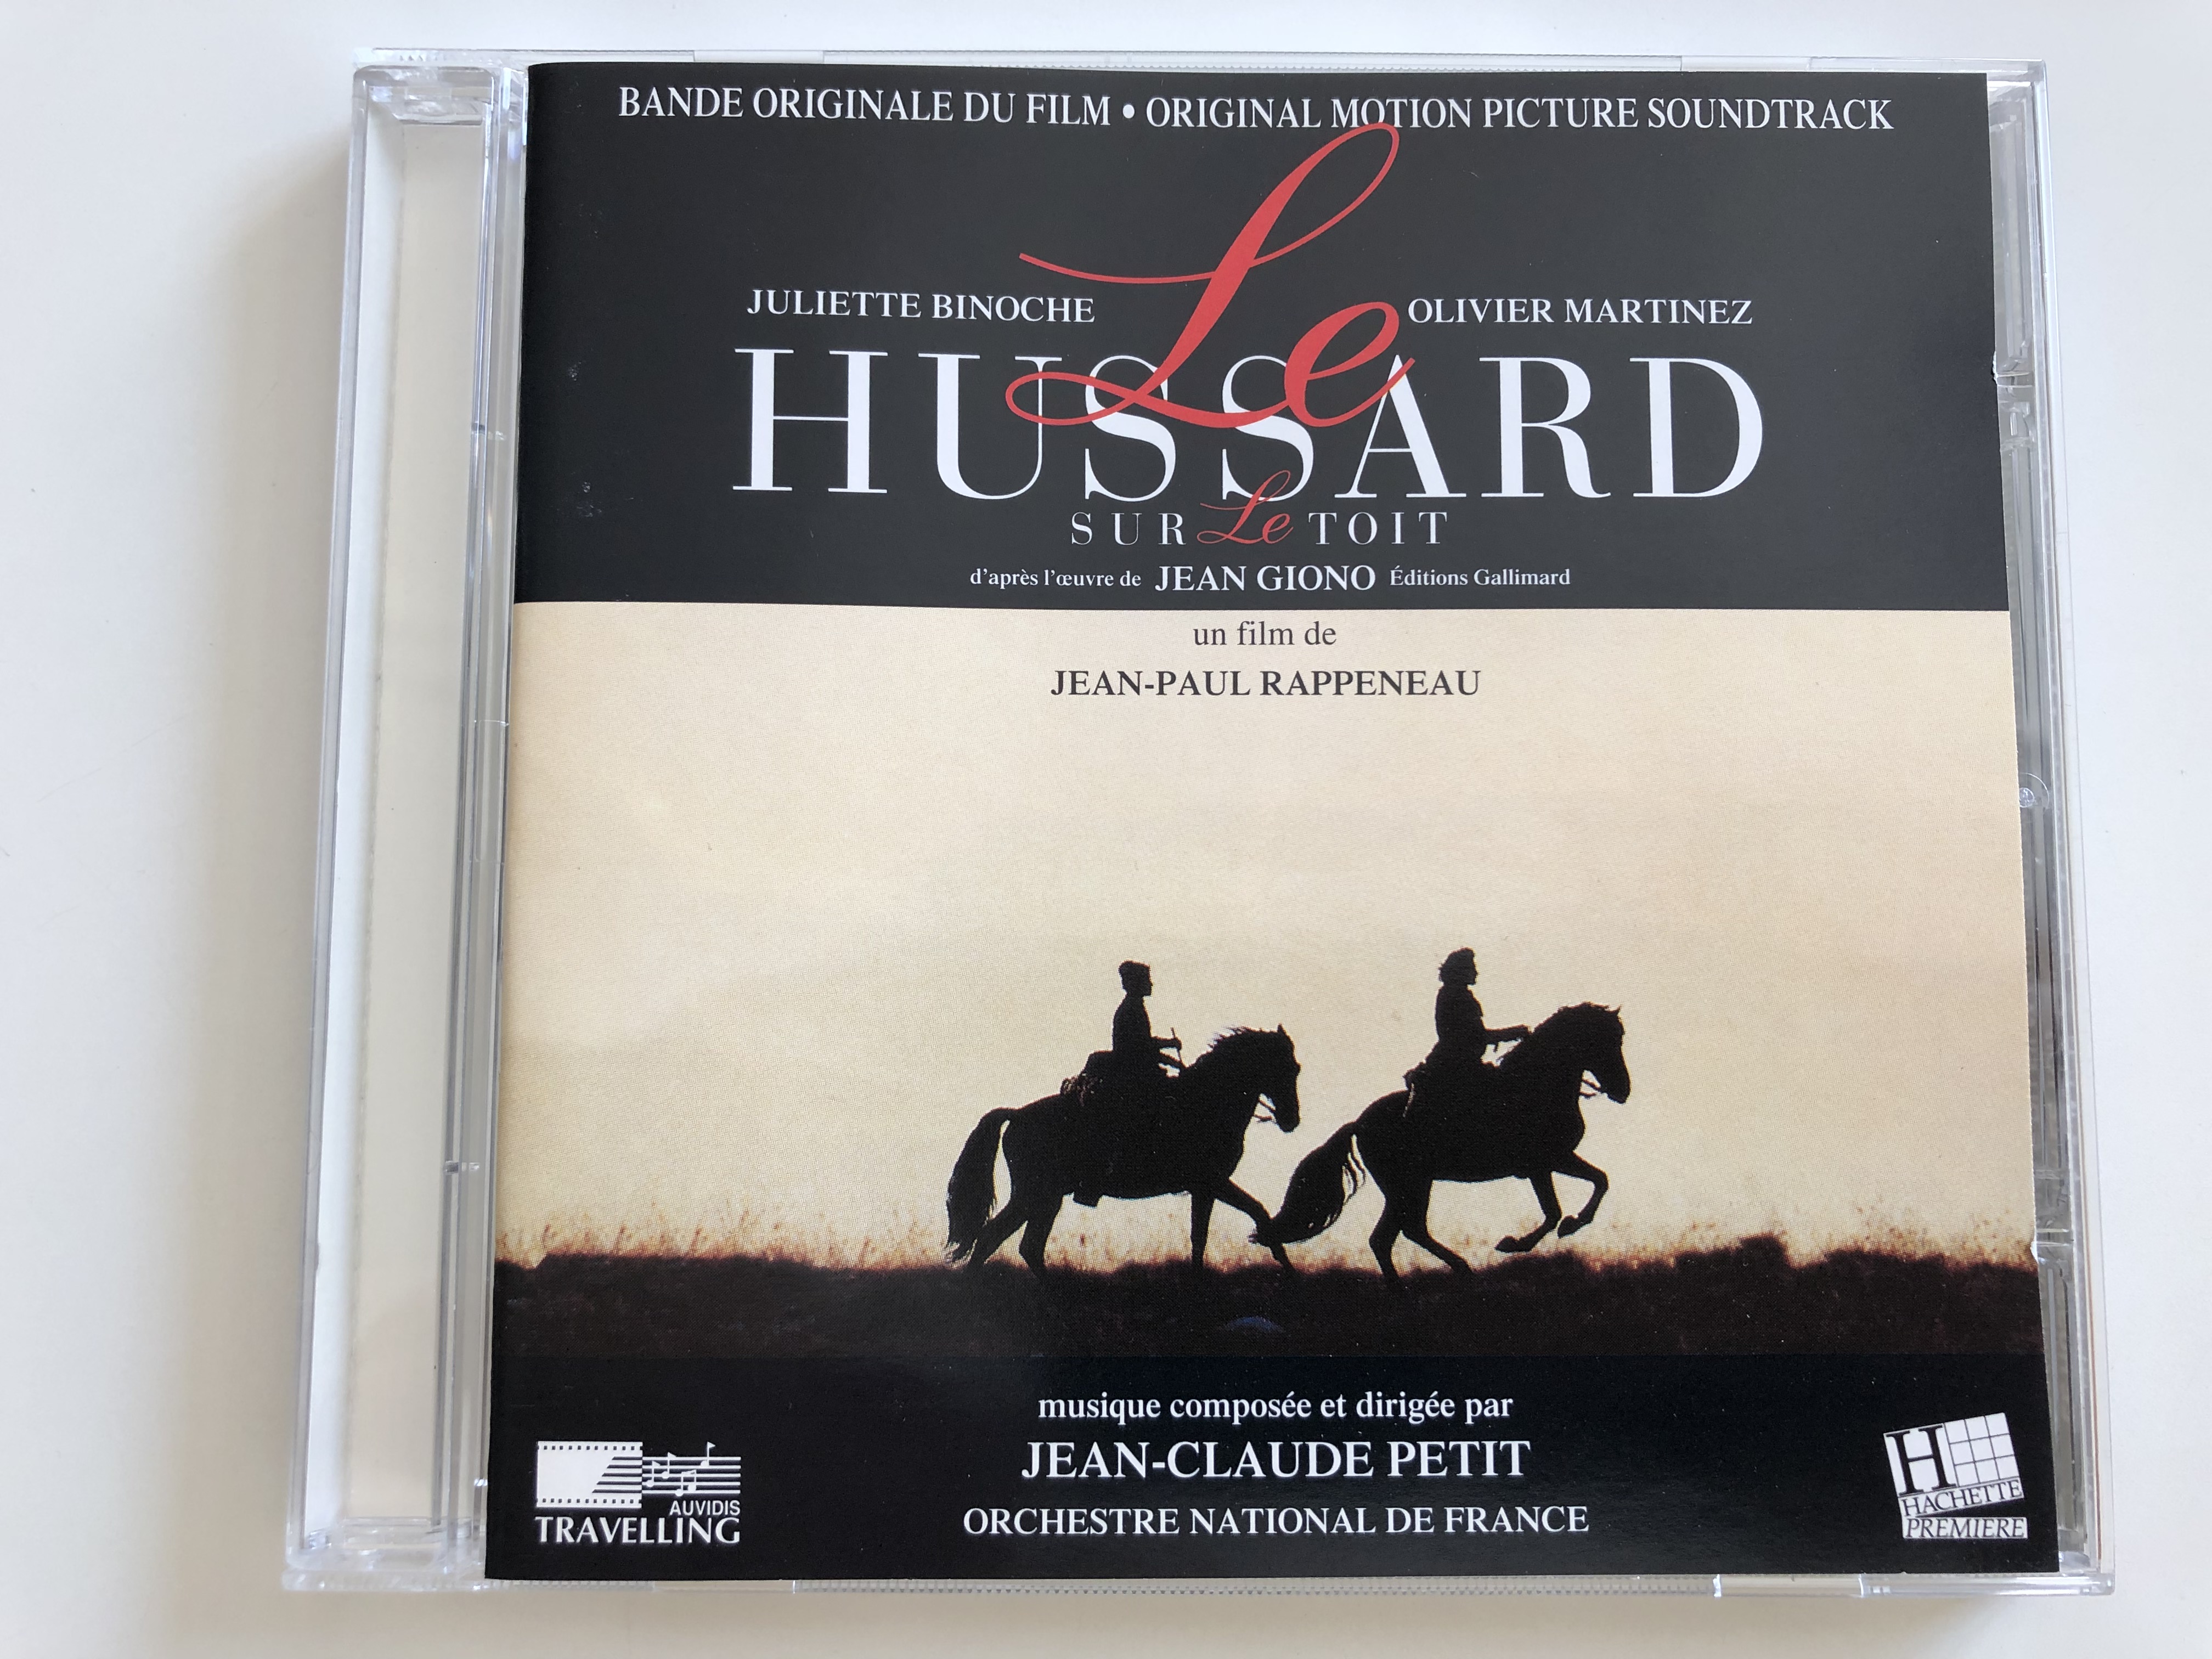 le-hussard-sur-le-toit-the-horseman-on-the-roof-bande-originale-du-film-original-motion-picture-soundtrack-1-.jpg